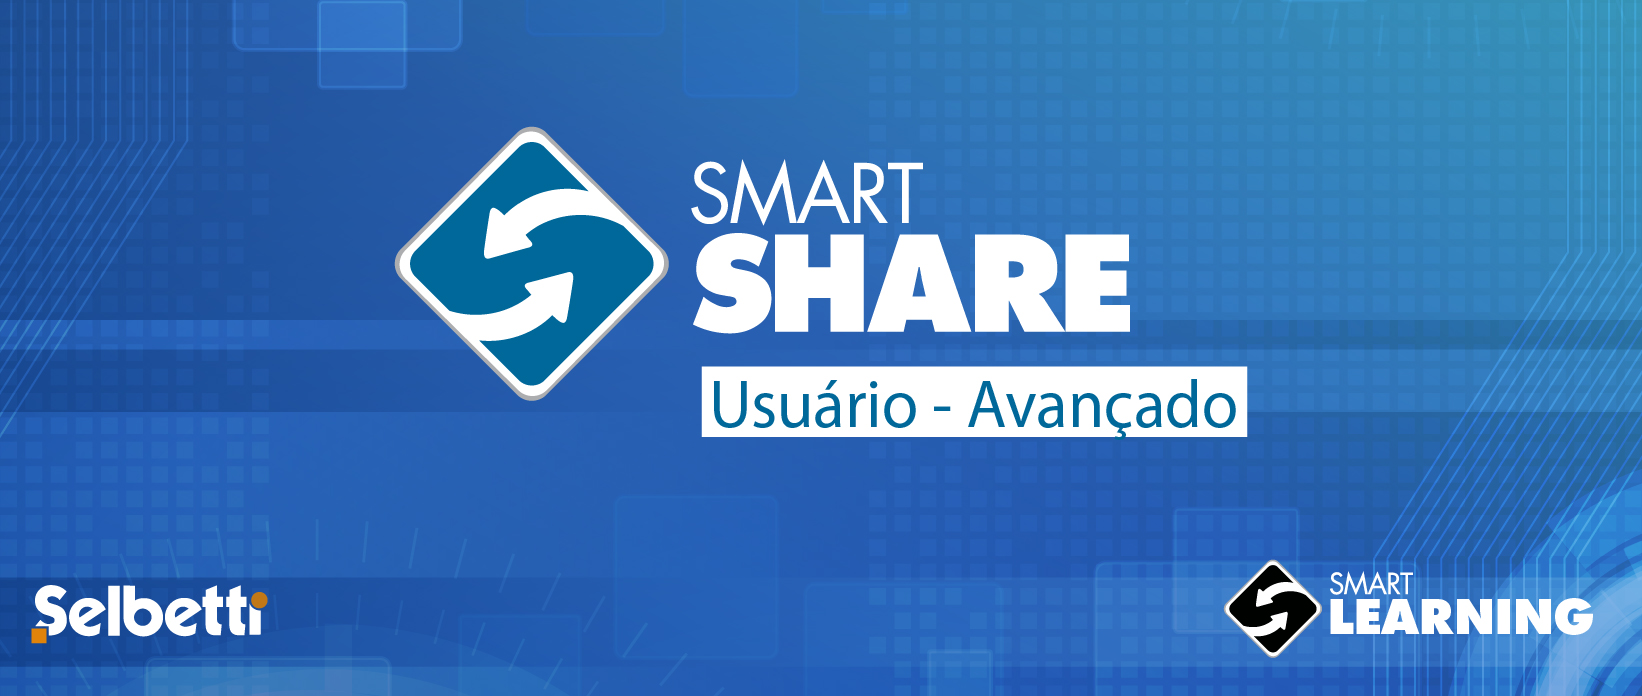 Banner - SmartShare - Avançado (Usuário)